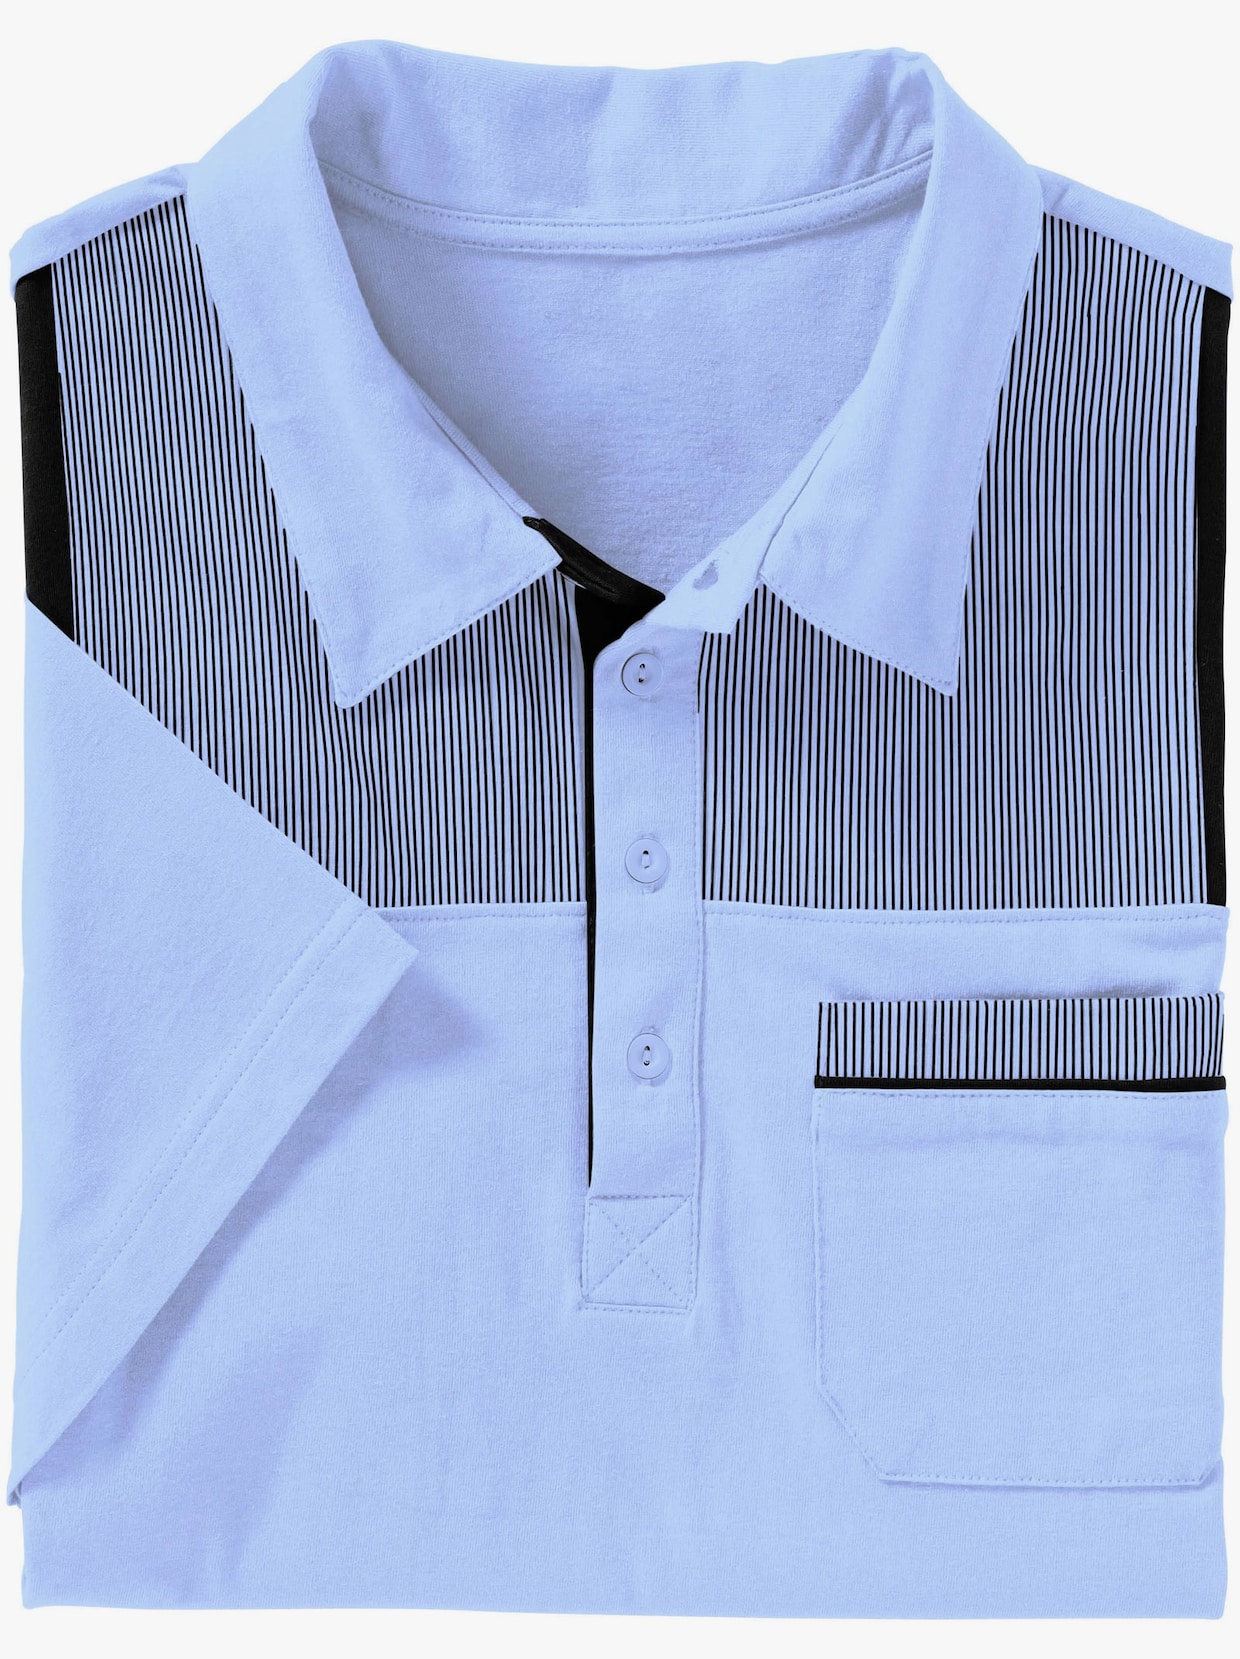 Poloshirt - hellblau-marine